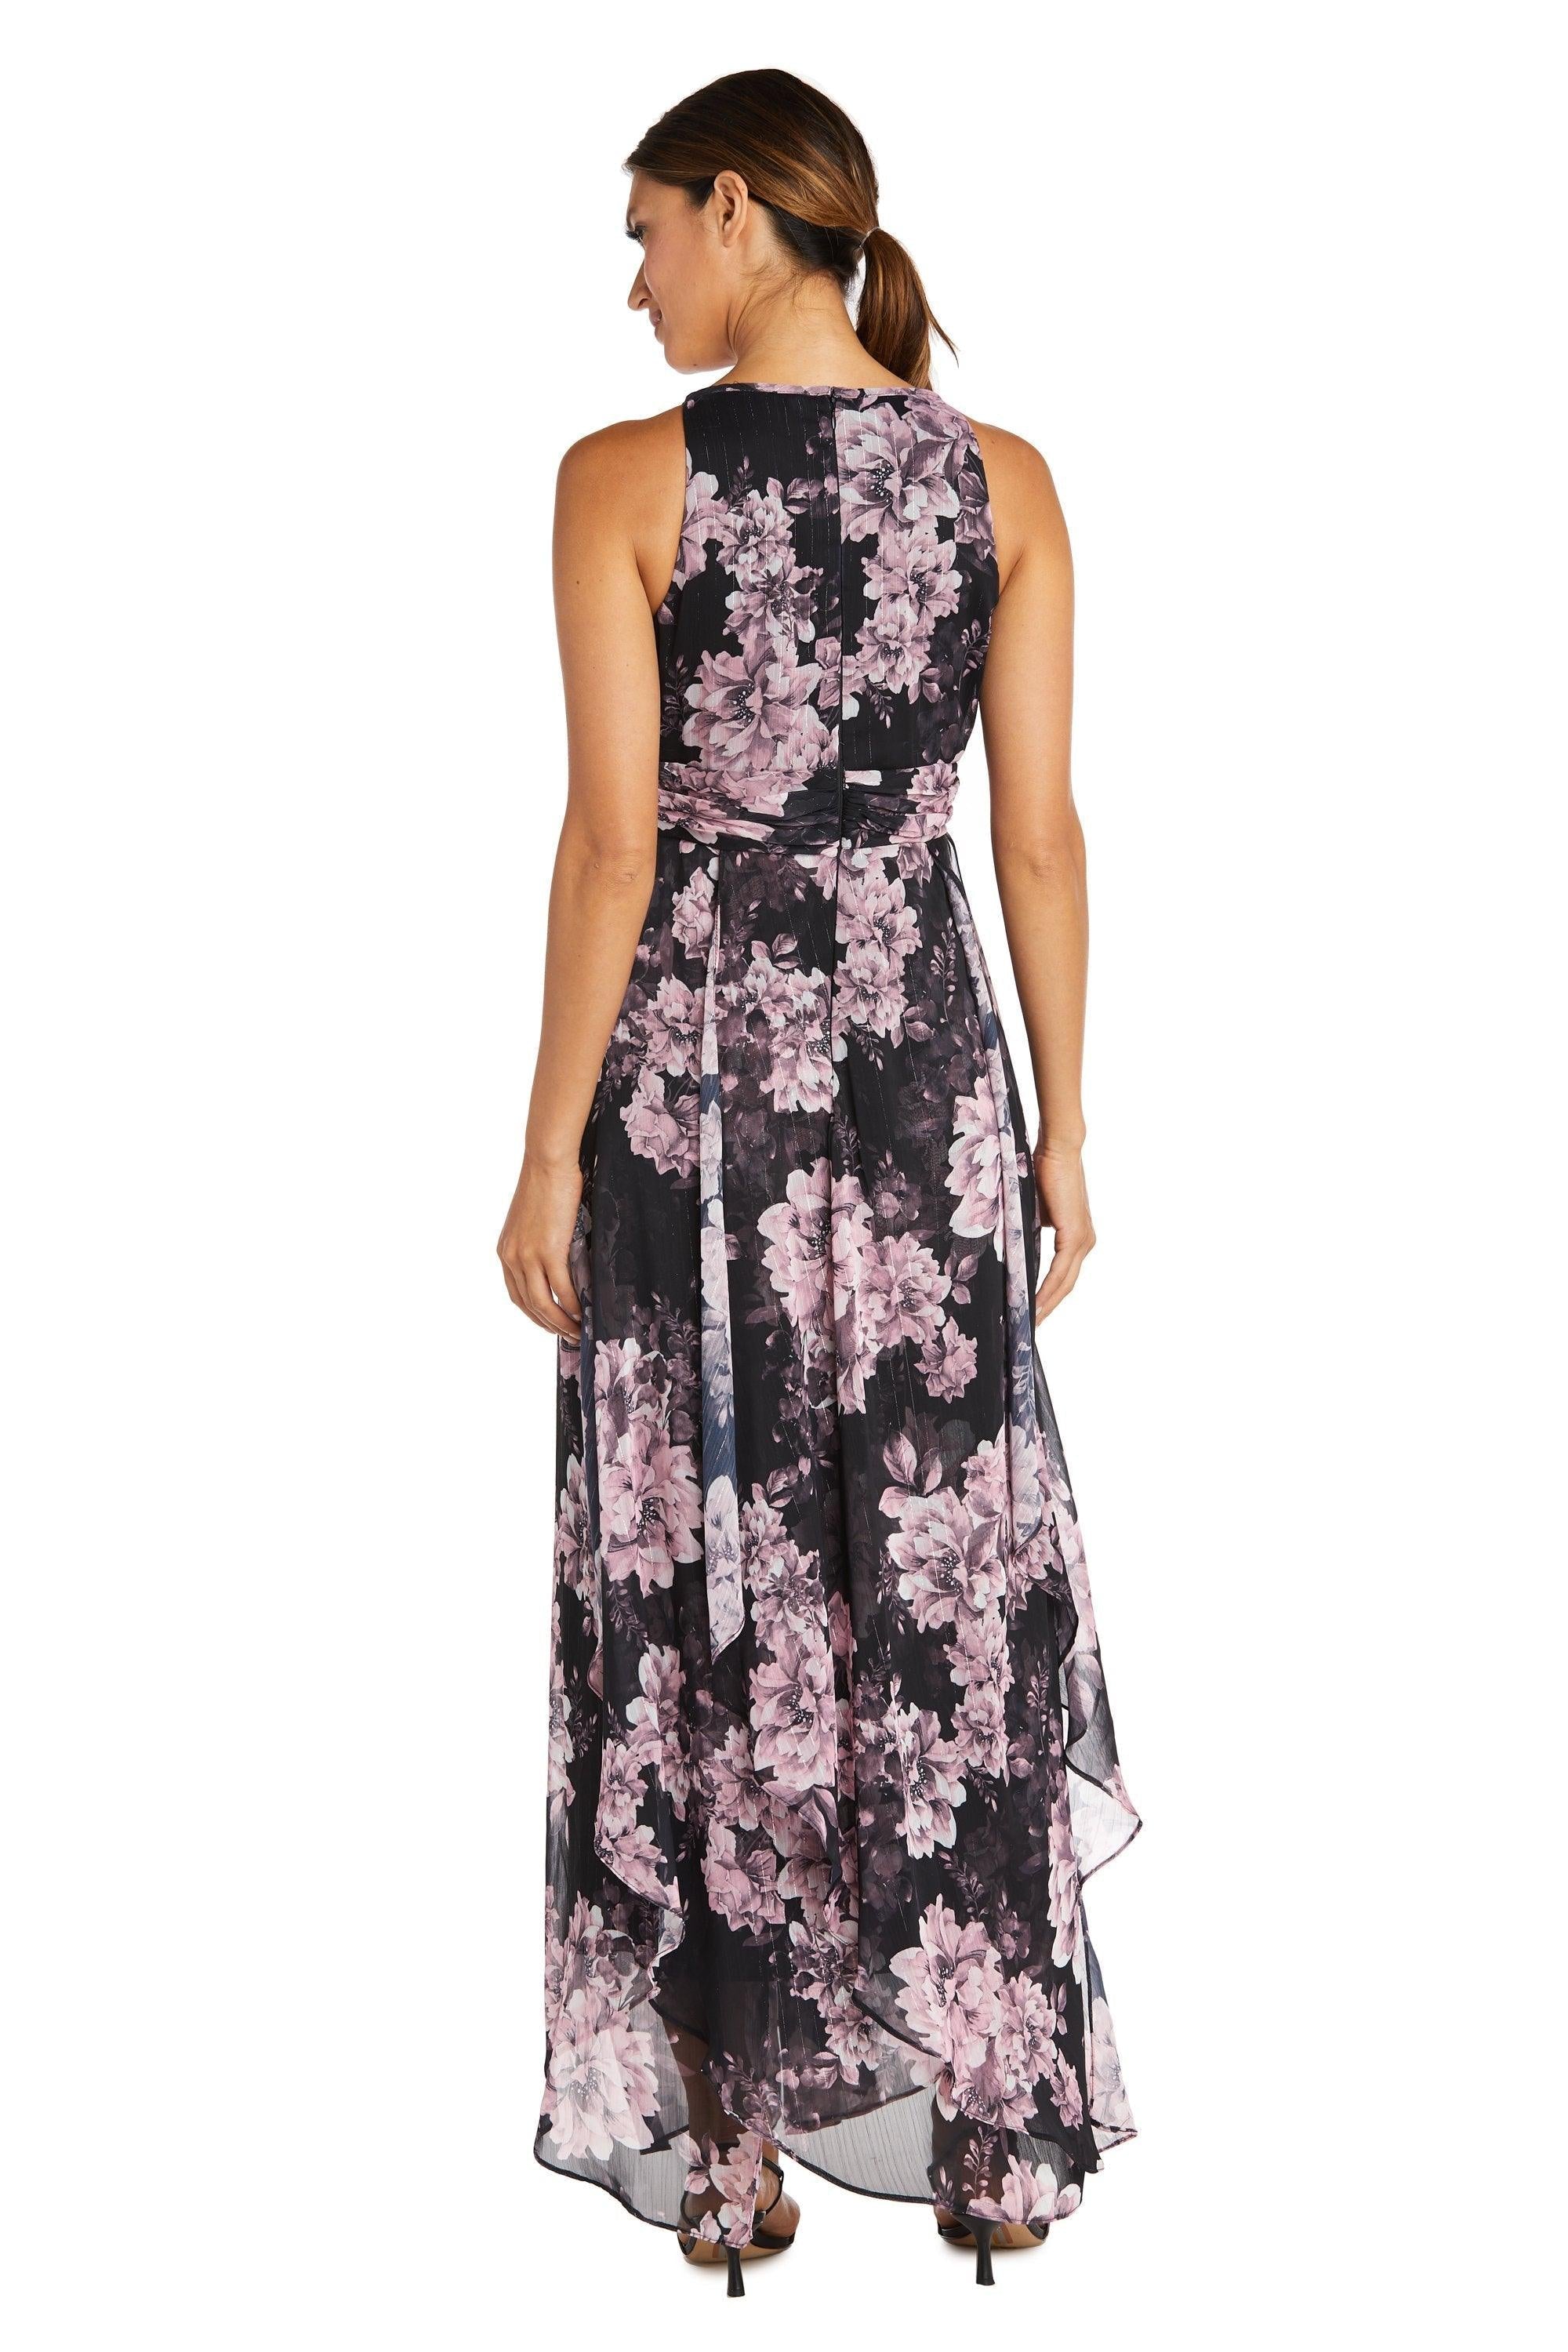 R&M Richards Long Formal Floral Halter Dress 7928 - The Dress Outlet